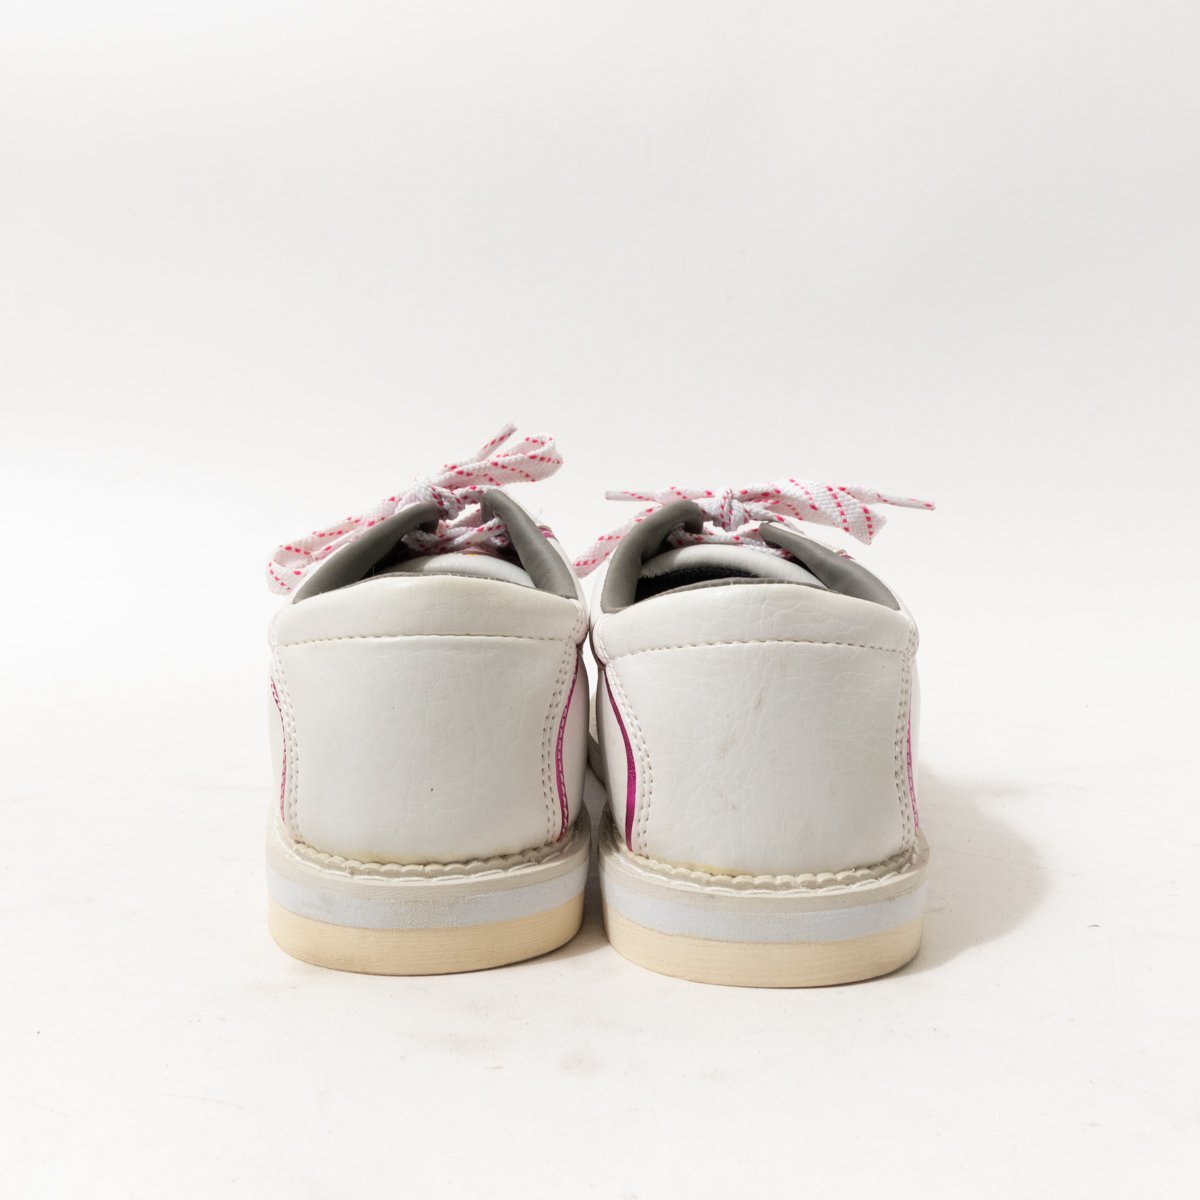 HI-SP высокий спорт боулинг обувь белый розовый 23cm кожа женский простой casual спорт салон обувь обувь 